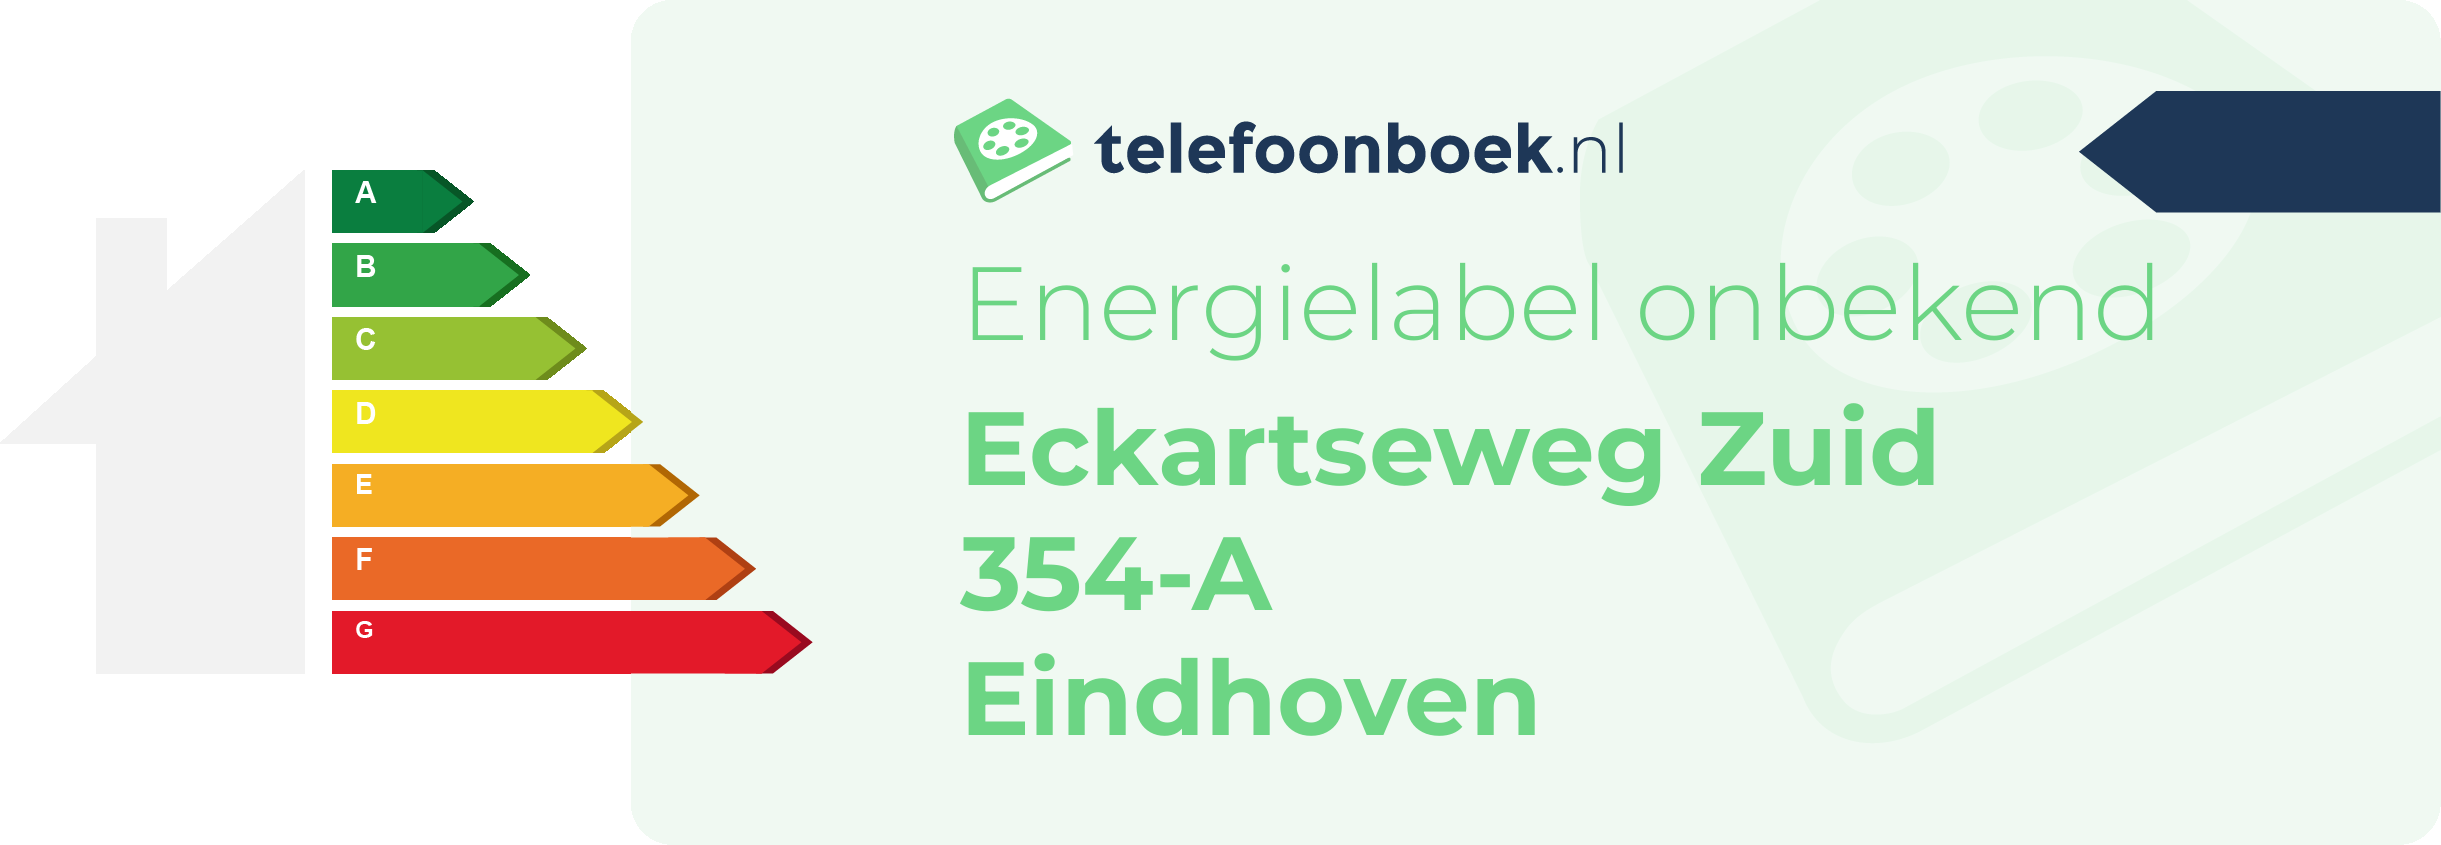 Energielabel Eckartseweg Zuid 354-A Eindhoven